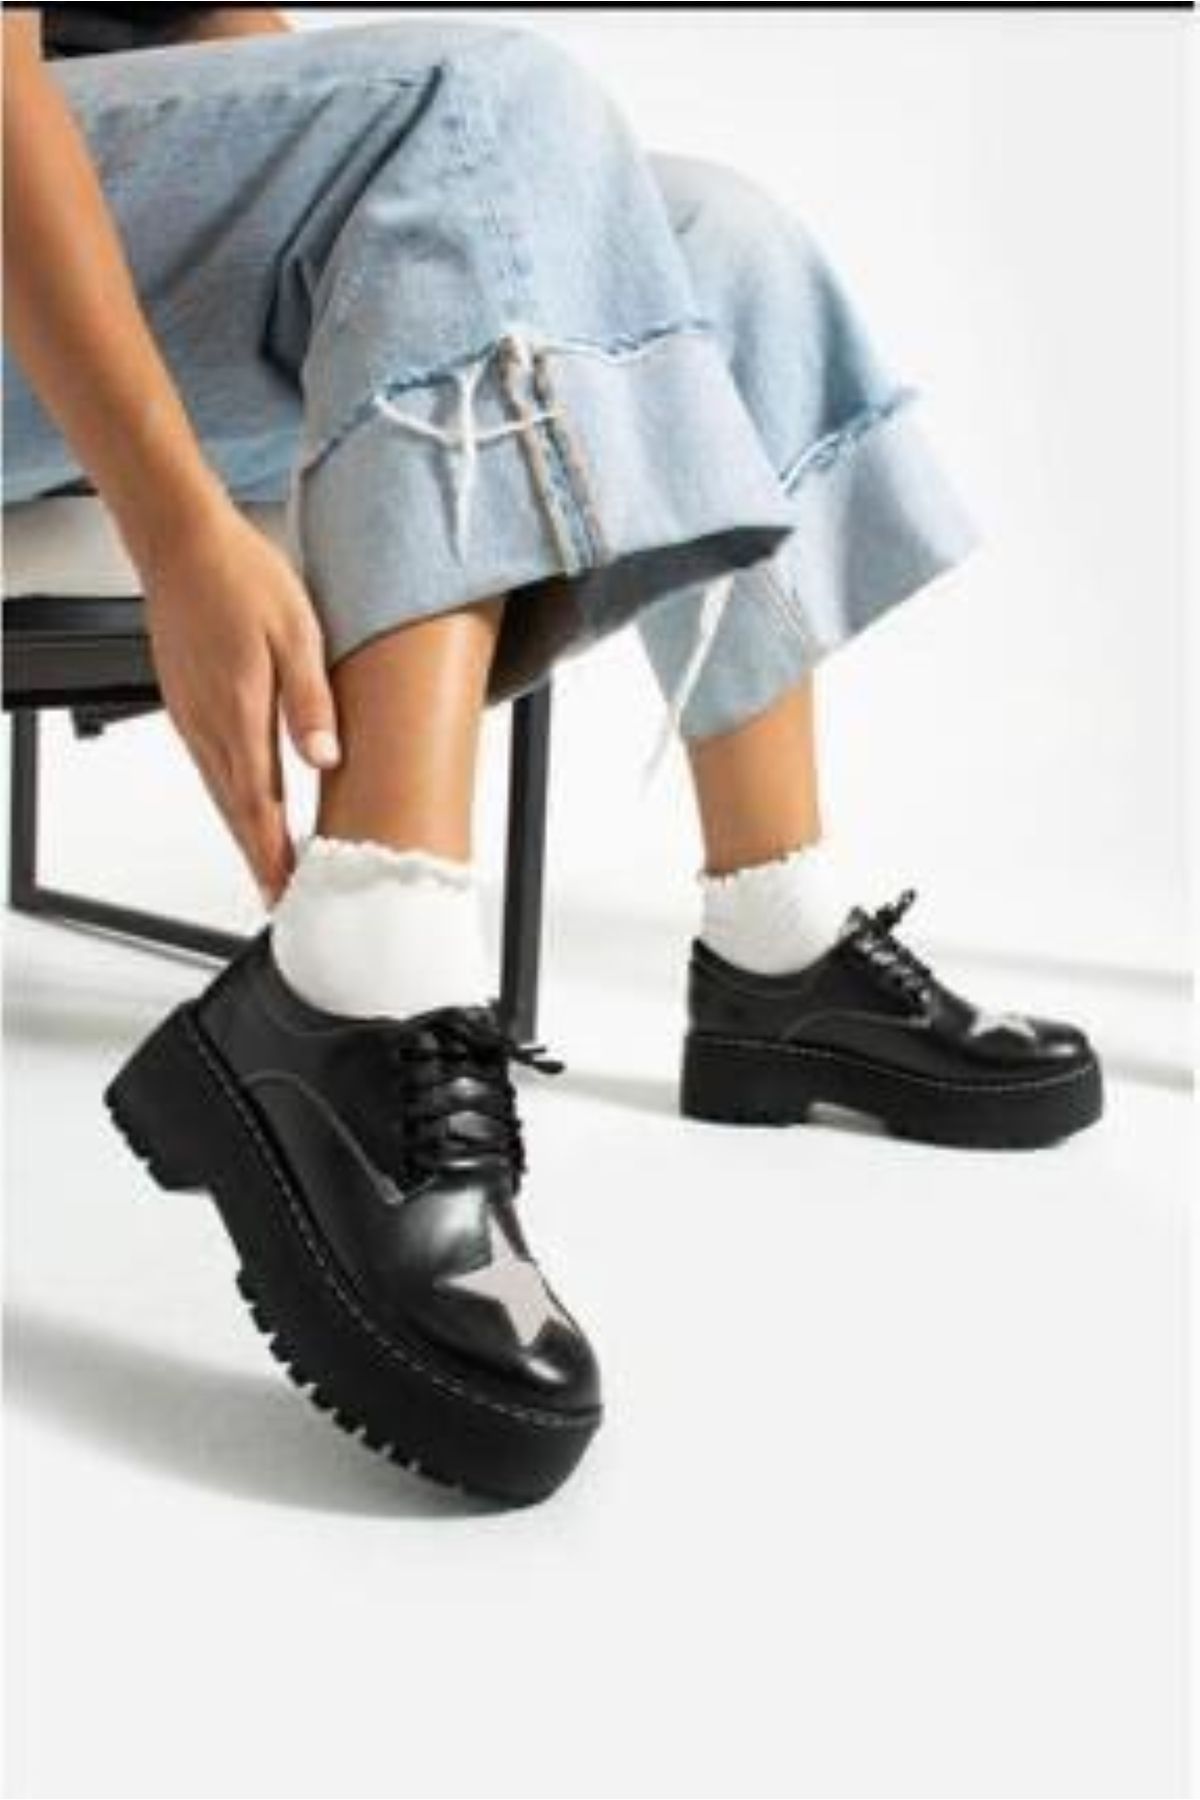 Köstebek Vintage Style Bağcıklı Yıldız Detay Siyah Mini Topuklu Ayakkabı